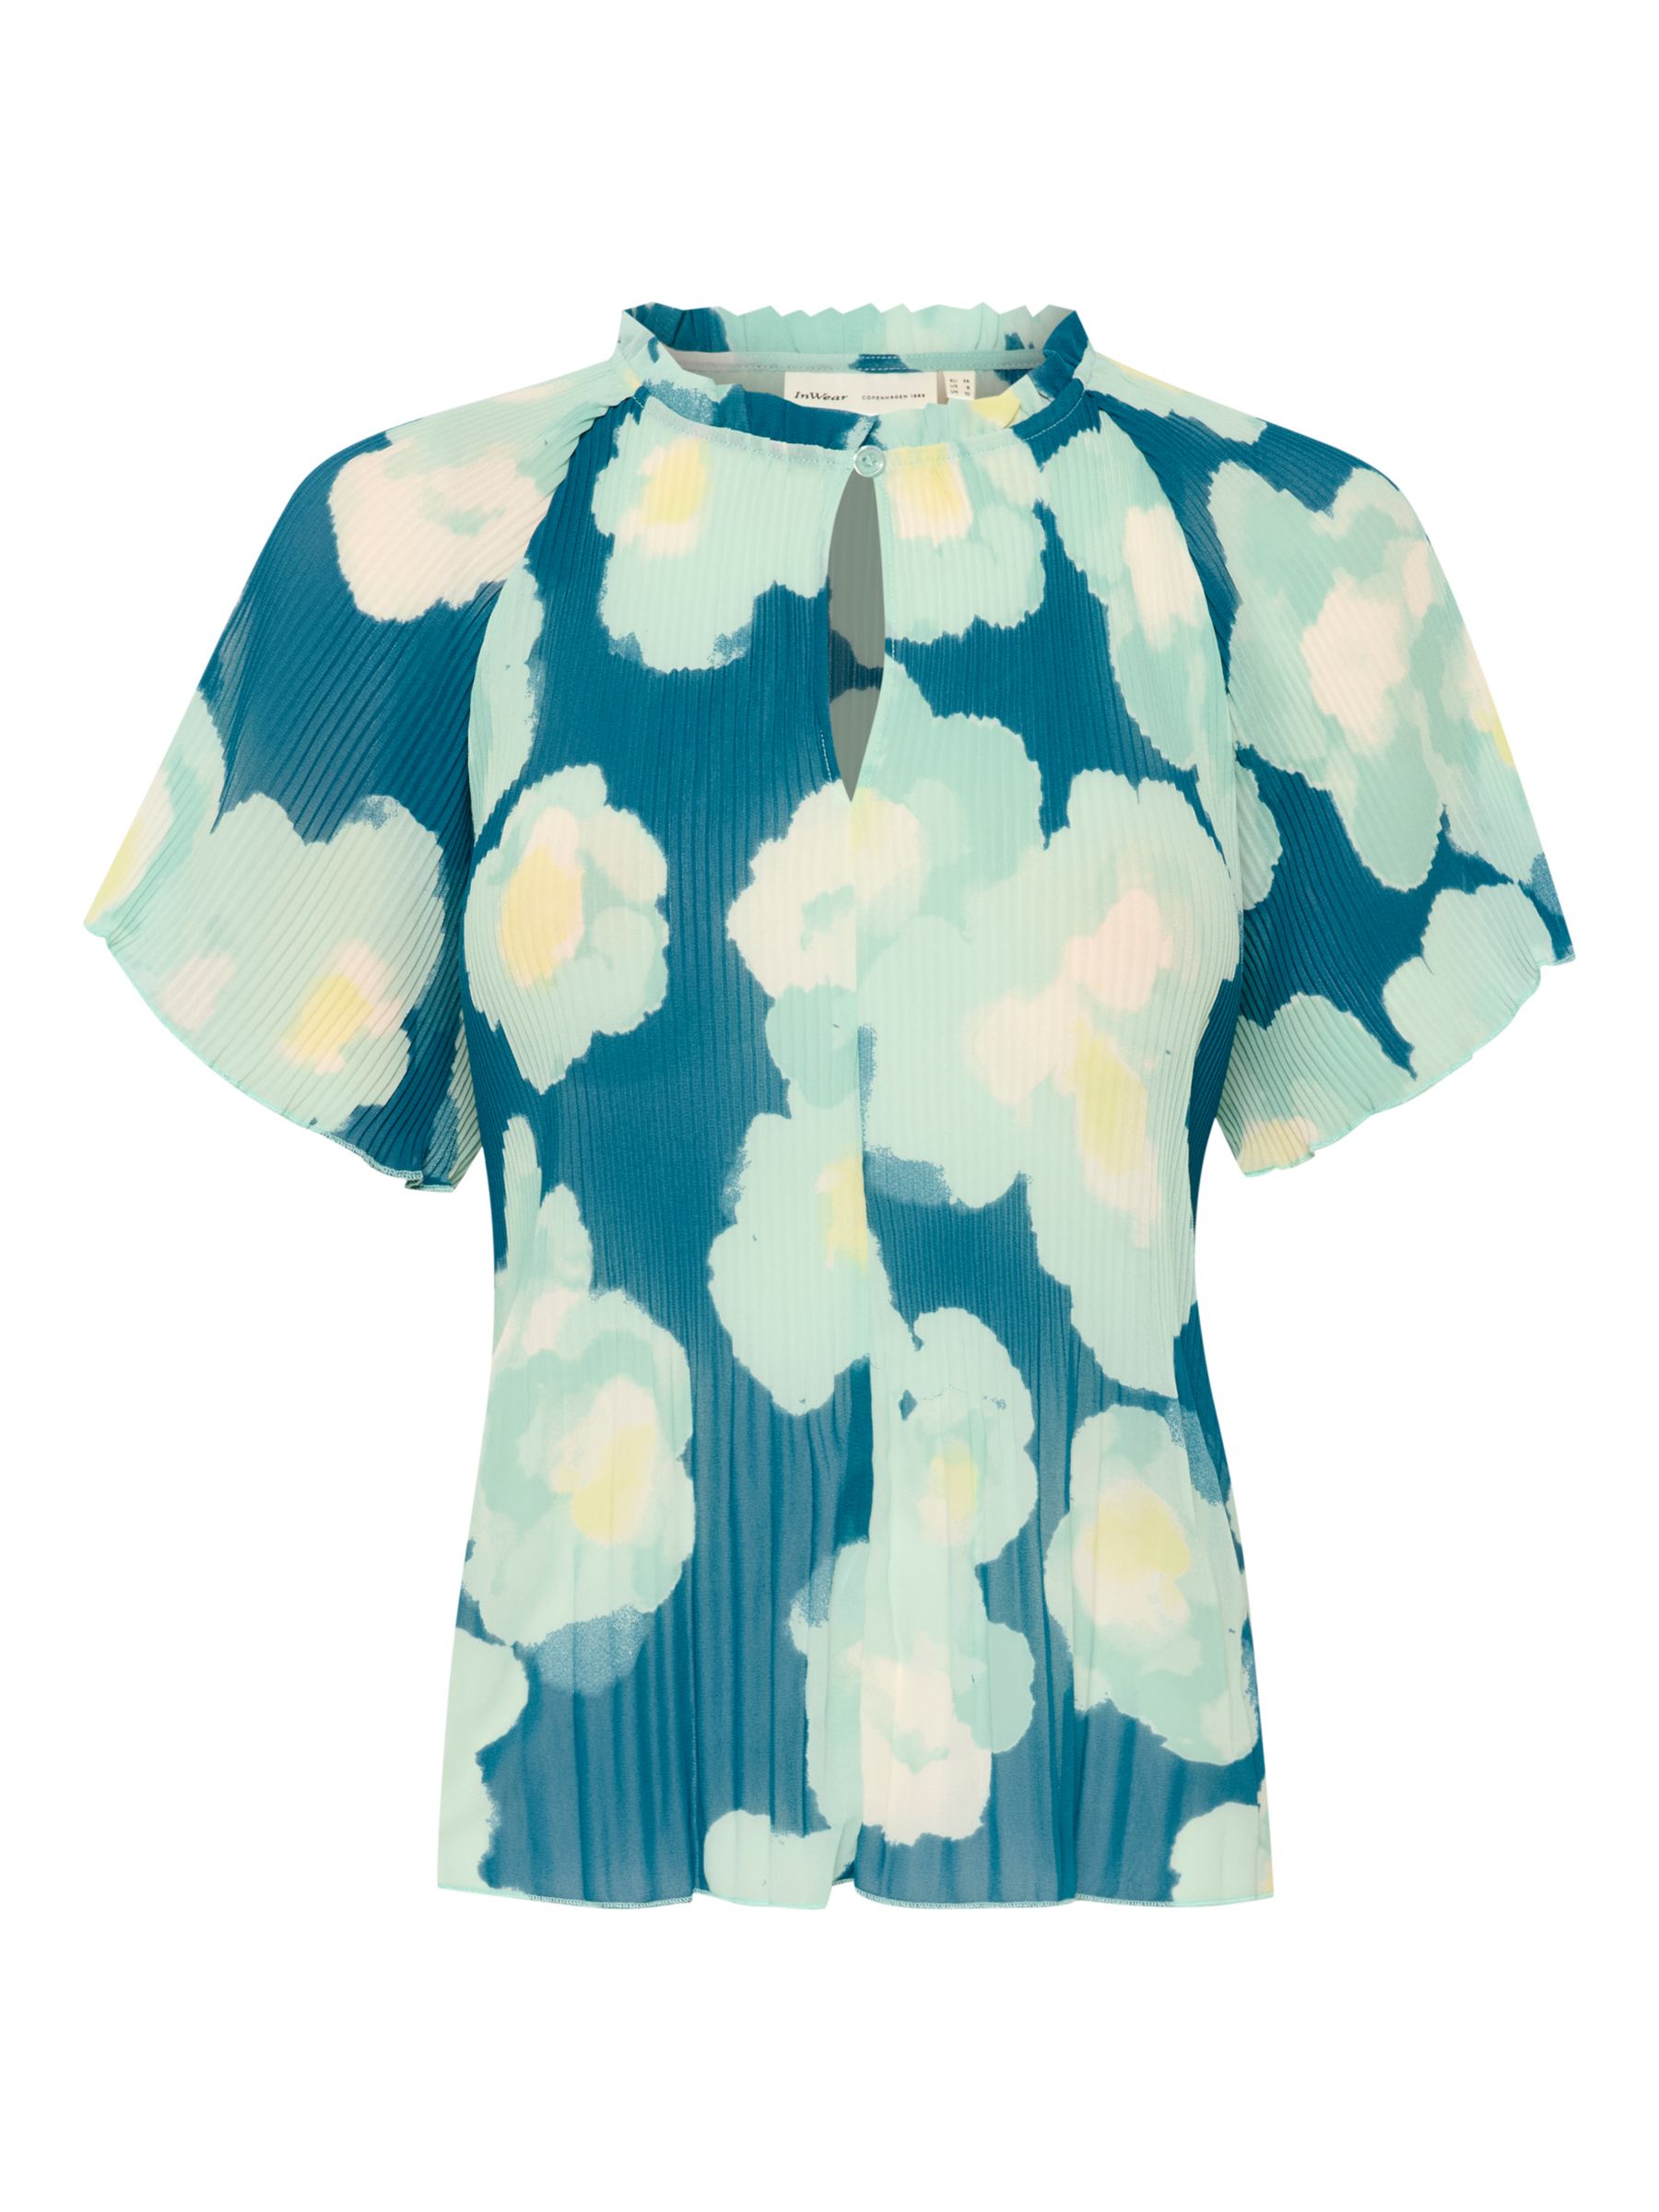 Buy InWear Hendra Short Sleeve Loose Fit Top, Green Poetic Flower Online at johnlewis.com